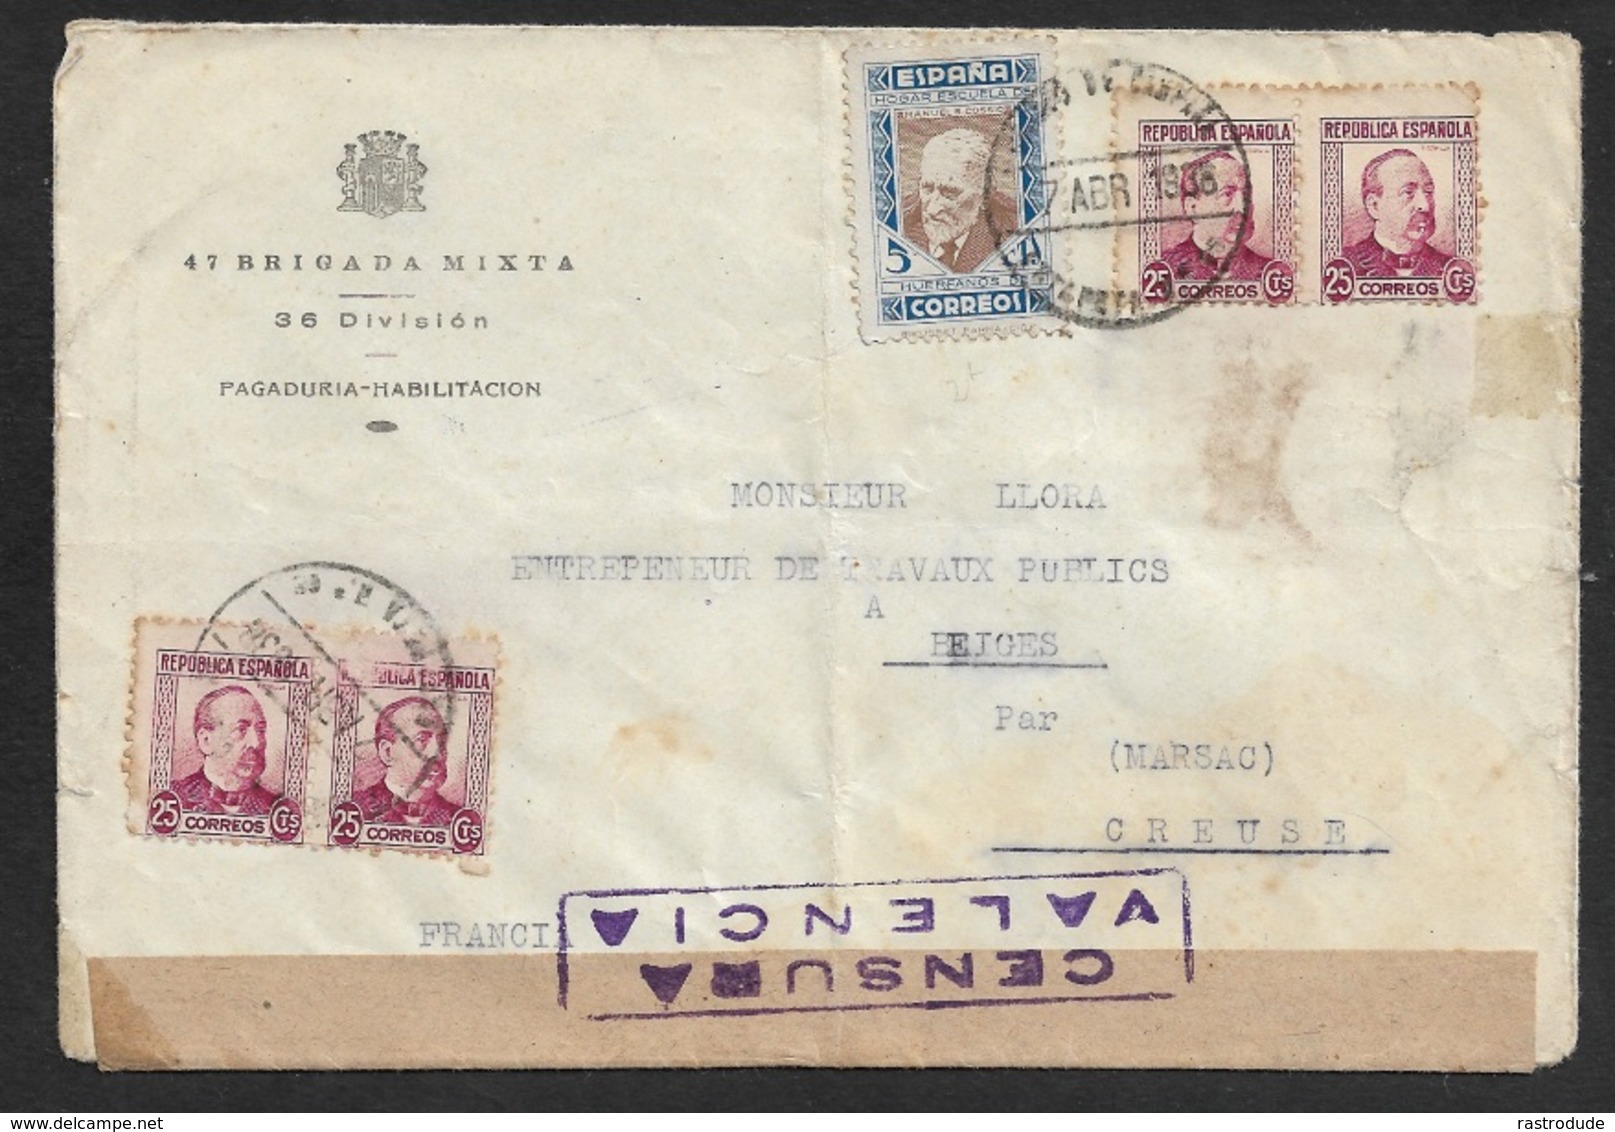 ESPAGNE SPAIN 1938 - Carta 47 BRIGADA MIXTA - CORREO DE CAMPAÑA ESTAFETA 65 - 4 X 25c Ed. 685, A FRANCIA - Lettres & Documents